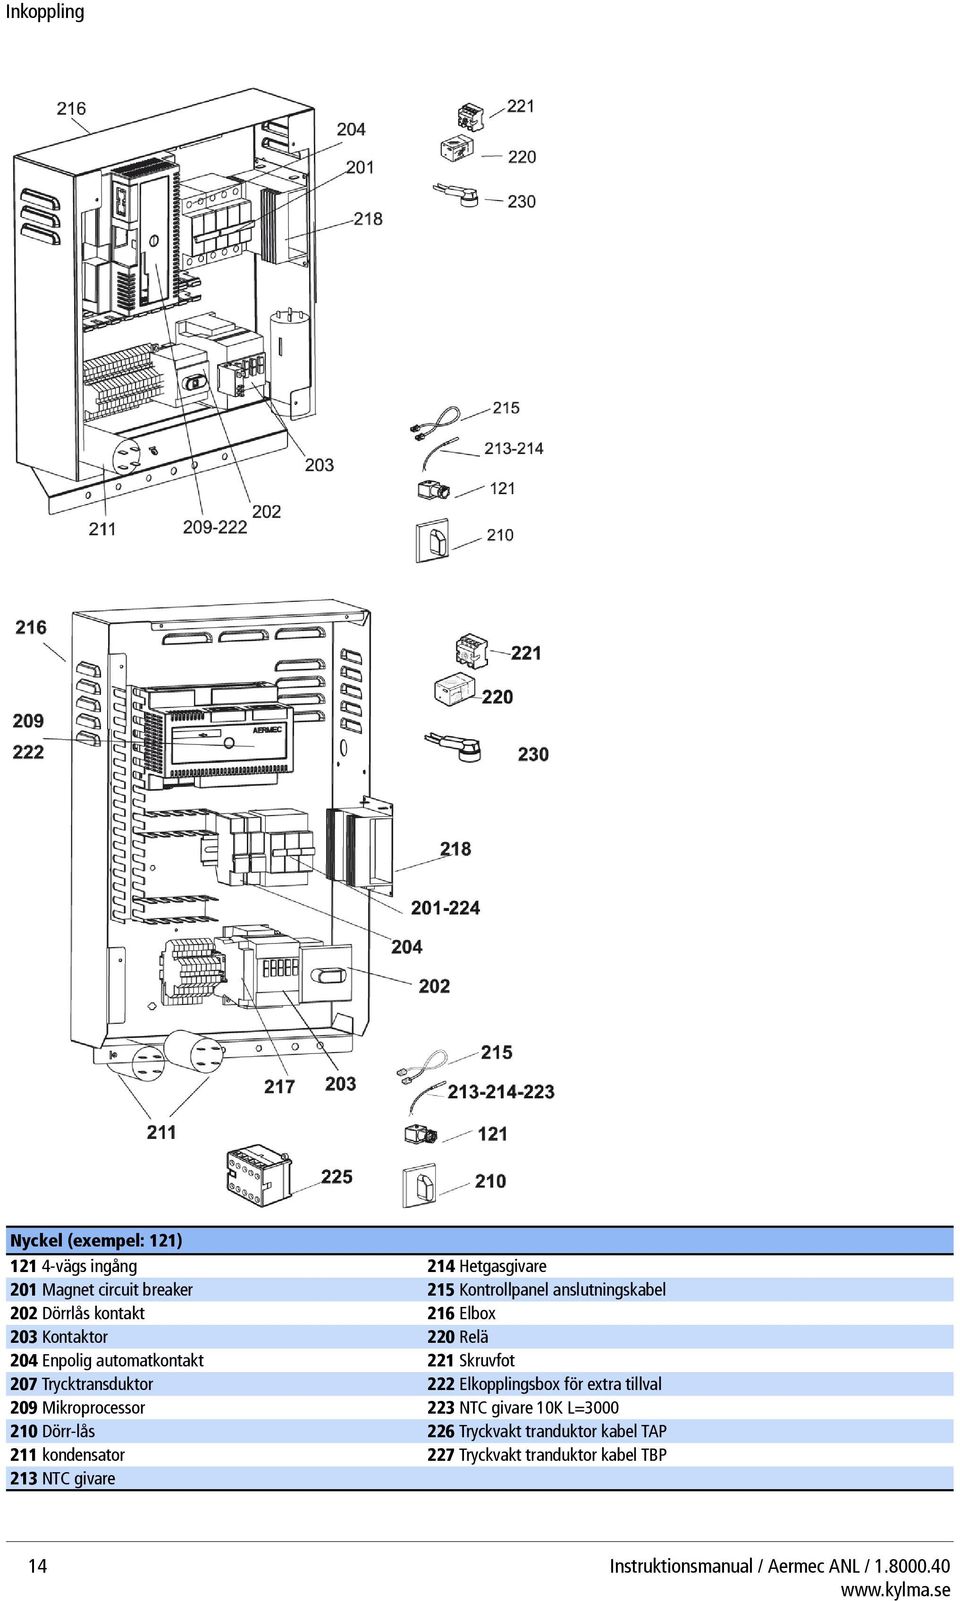 Trycktransduktor 222 Elkopplingsbox för extra tillval 209 Mikroprocessor 223 NTC givare 10K L=3000 210 Dörr-lås 226